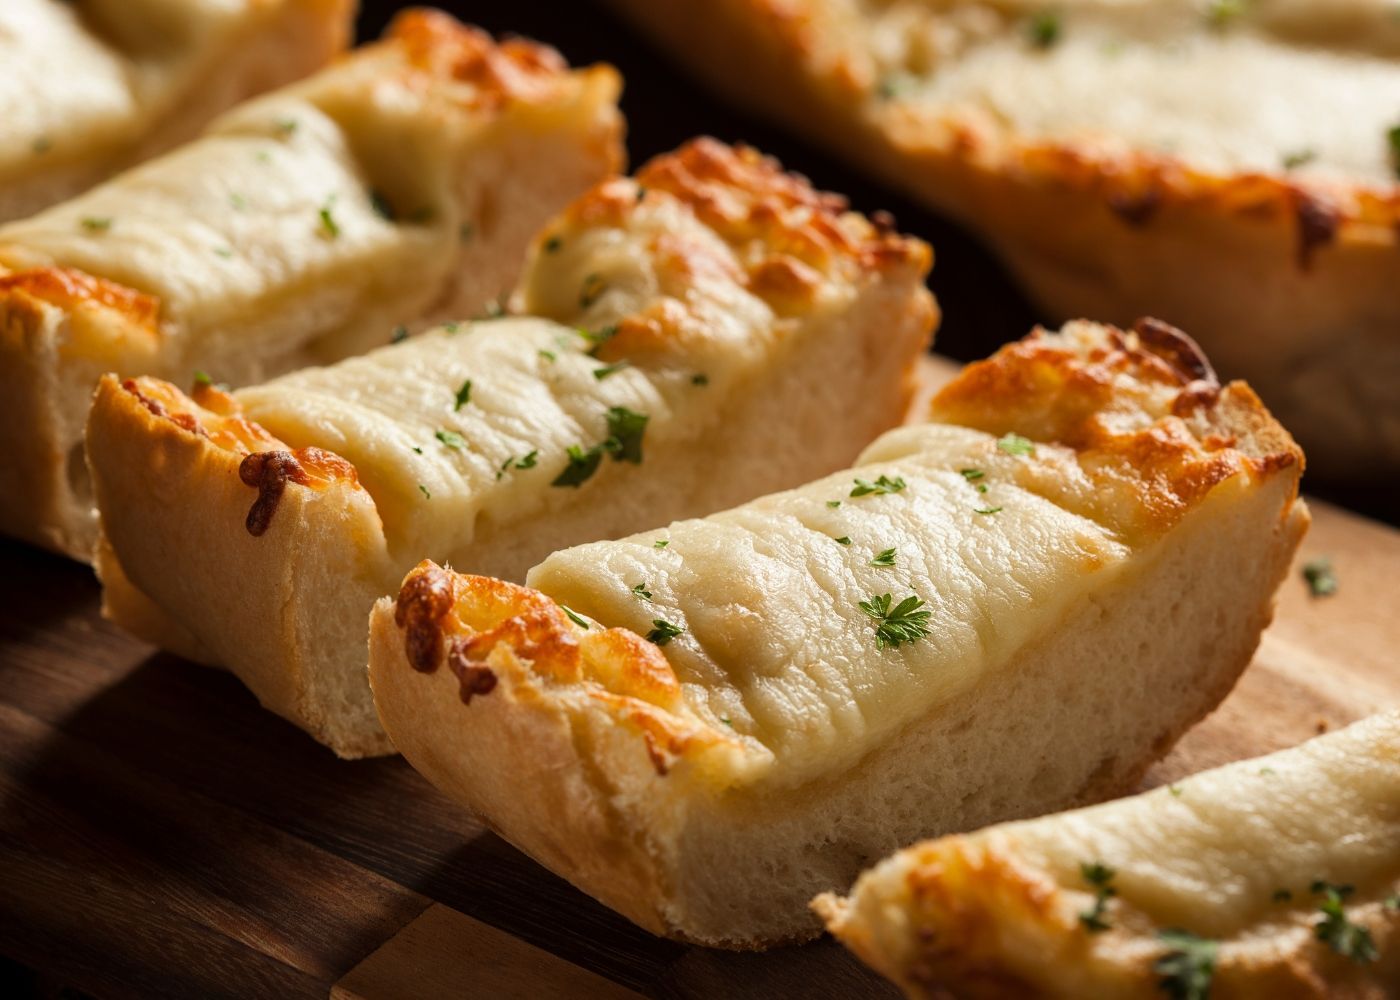 Worlds best cheese garlic bread - serves 4-5